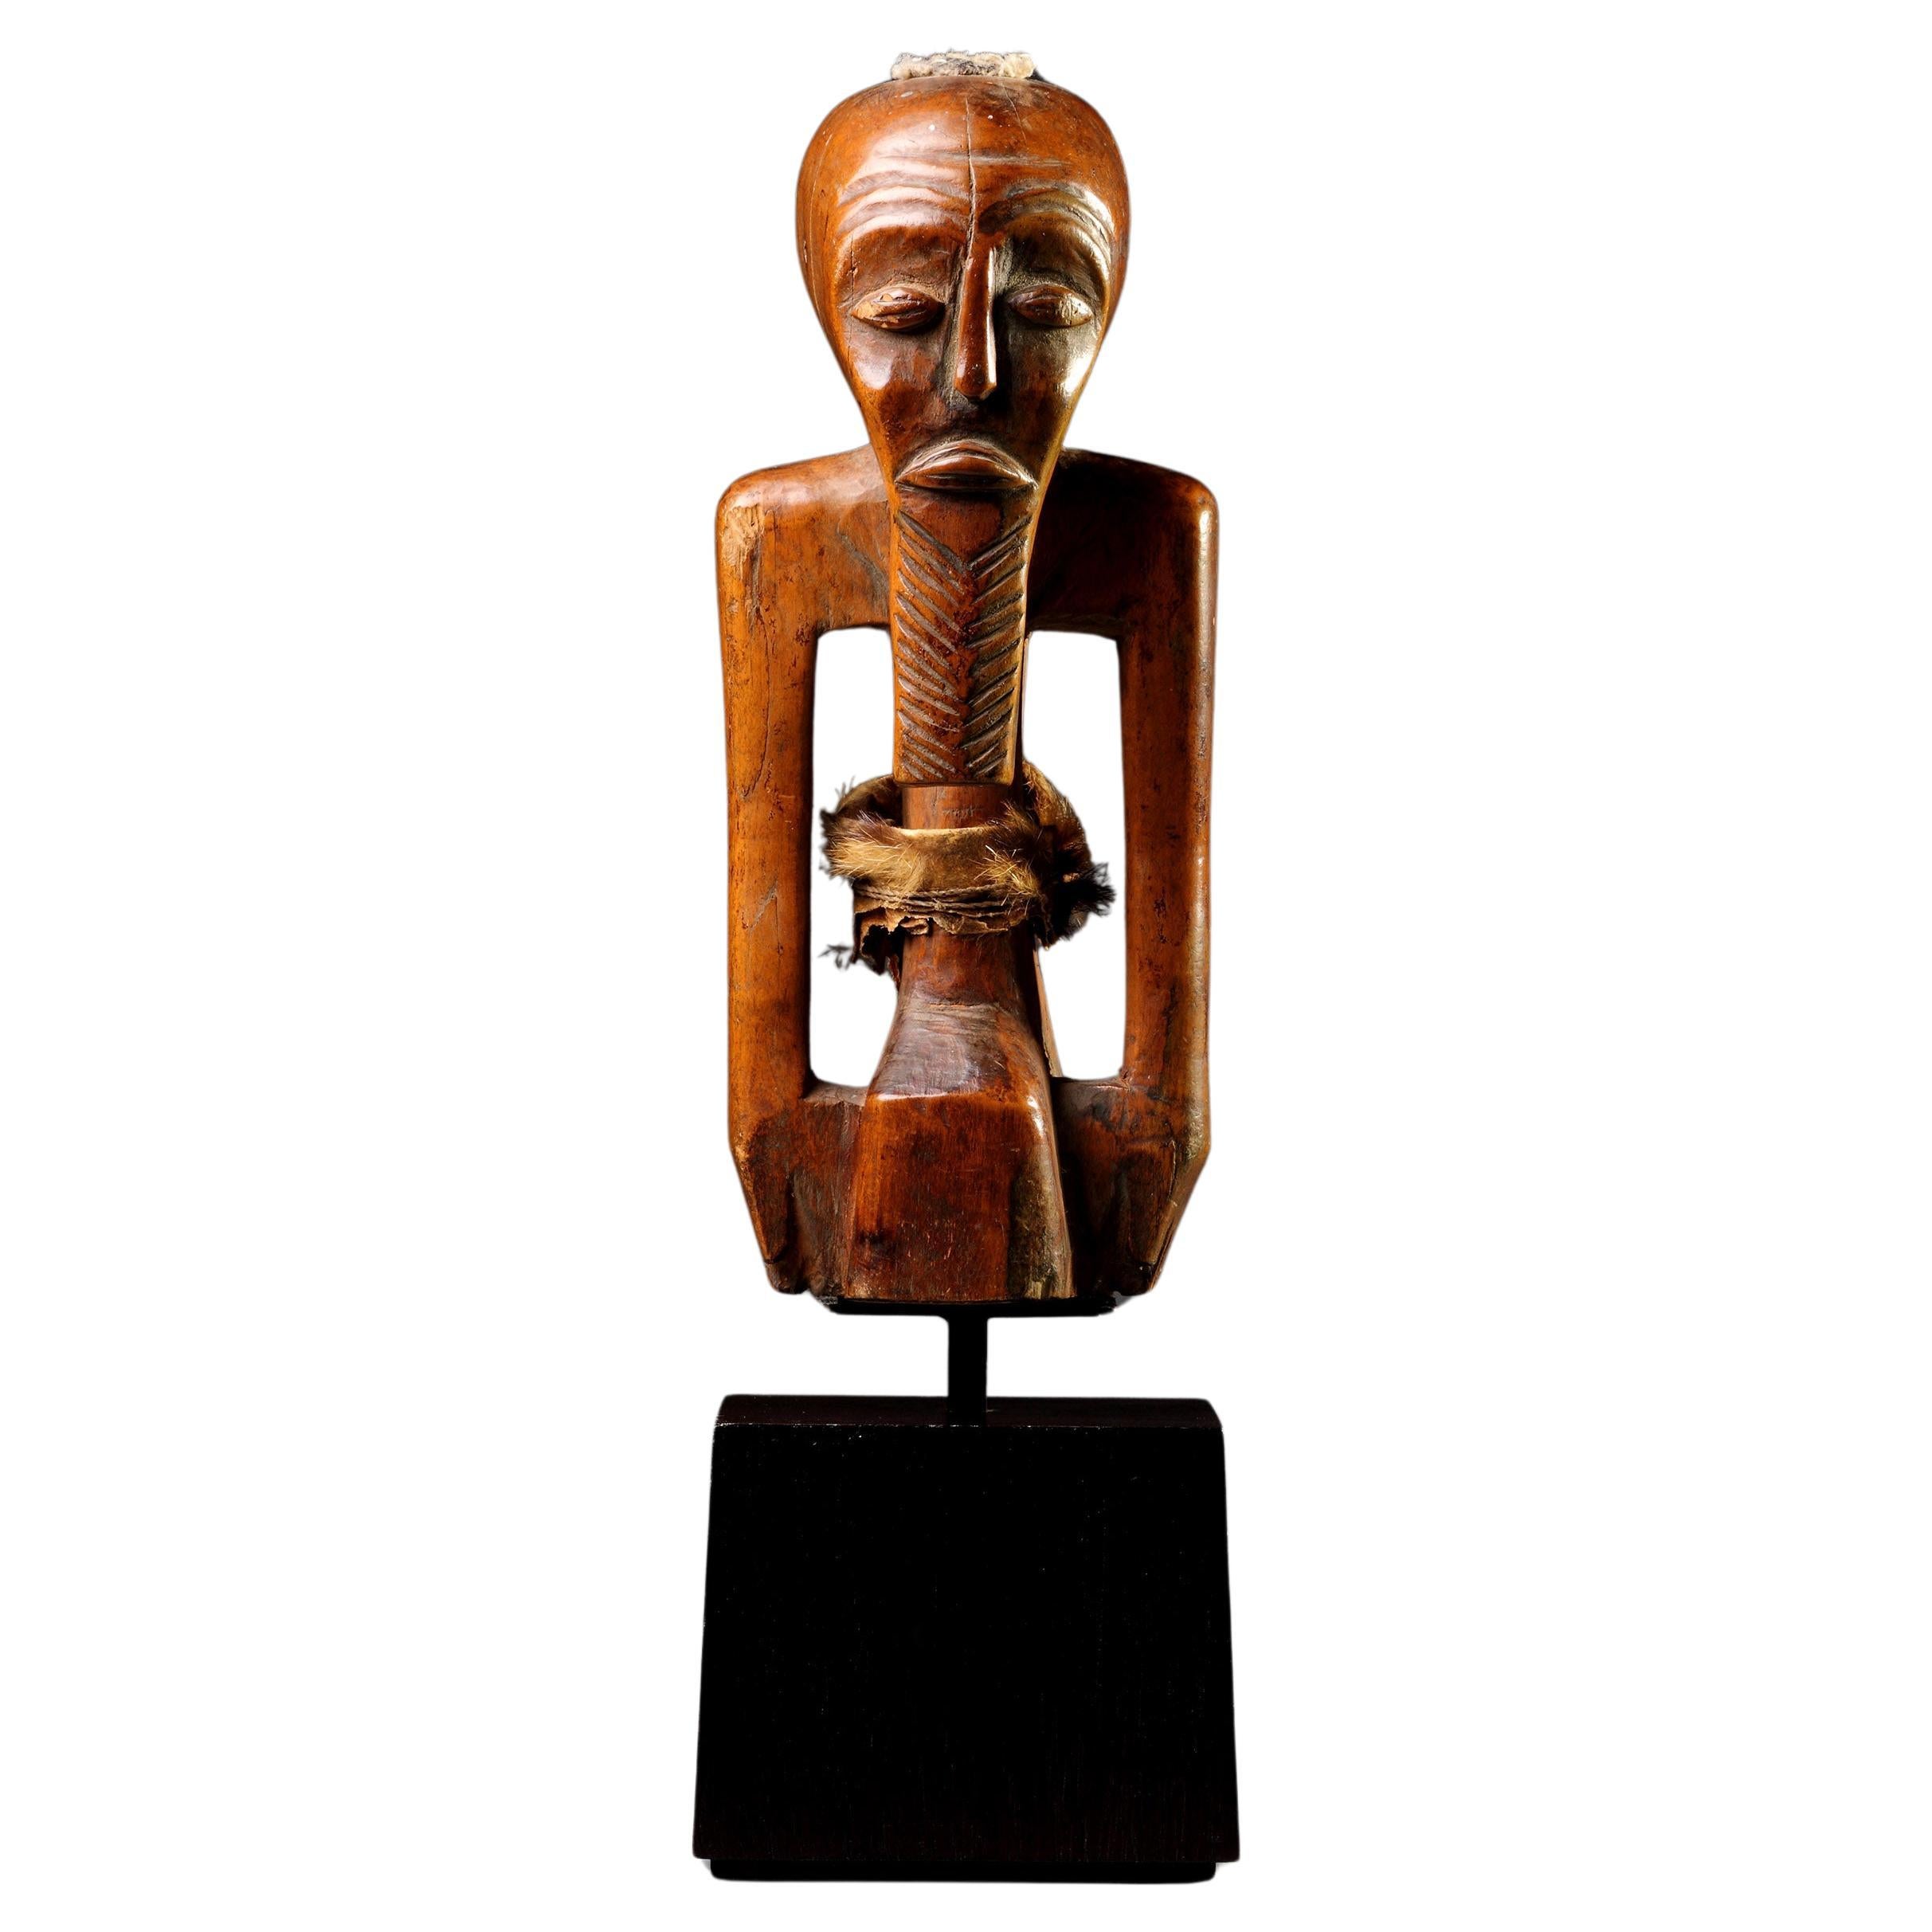 Eine Songye-Schutzfetischfigur 'Nkishi' aus dem Südostkongo, Zaire, aus Geometr